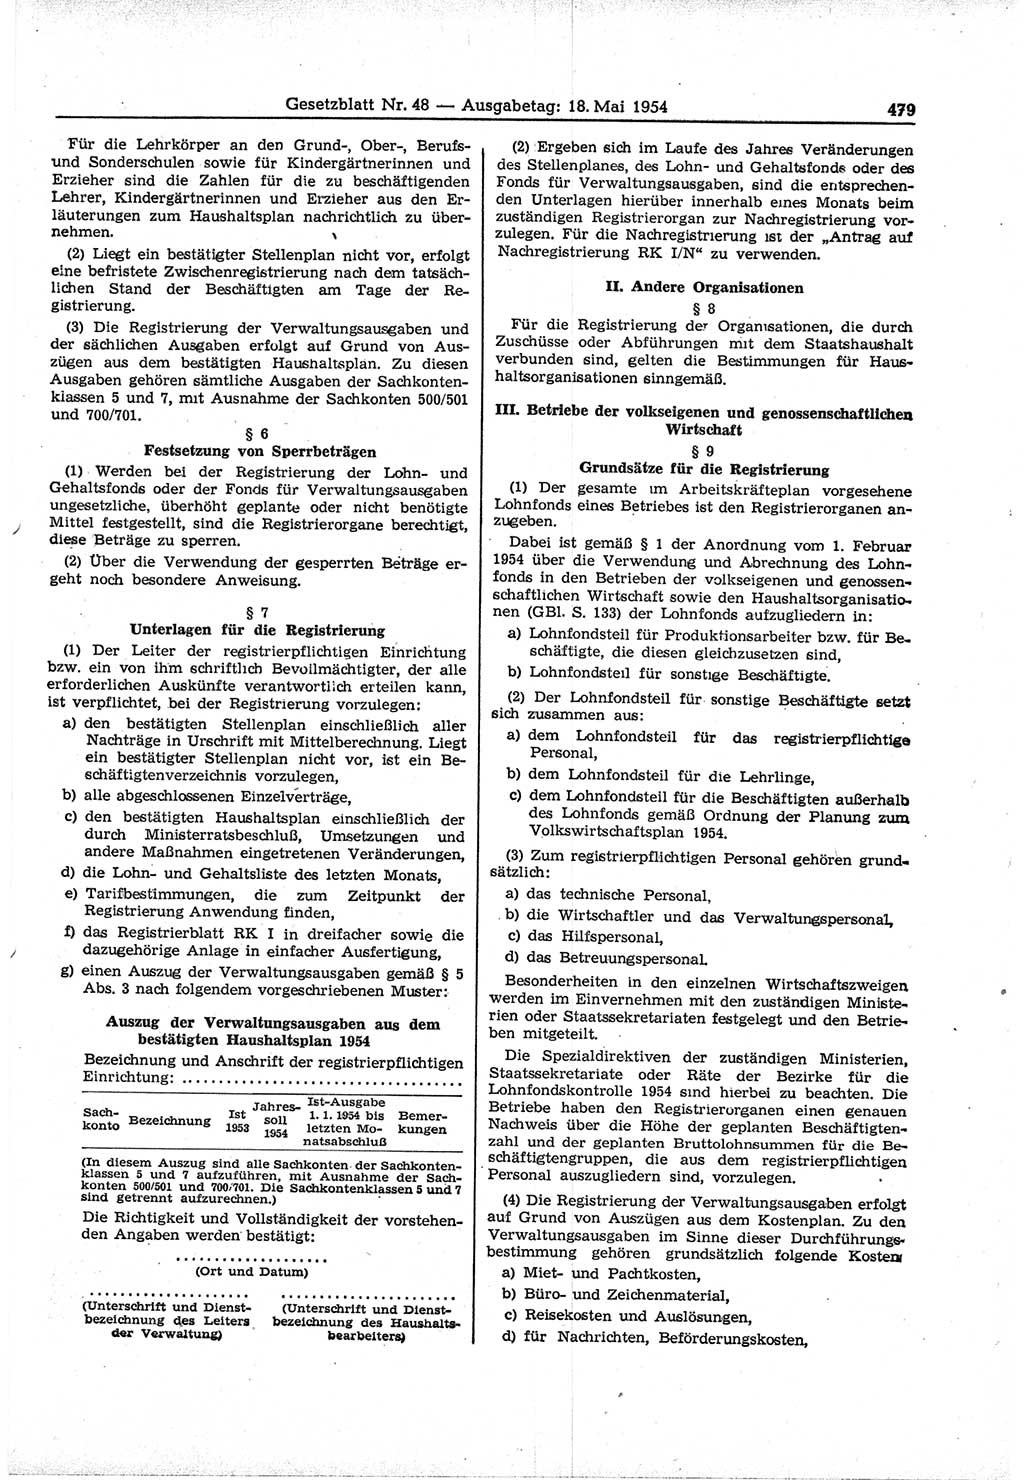 Gesetzblatt (GBl.) der Deutschen Demokratischen Republik (DDR) 1954, Seite 479 (GBl. DDR 1954, S. 479)